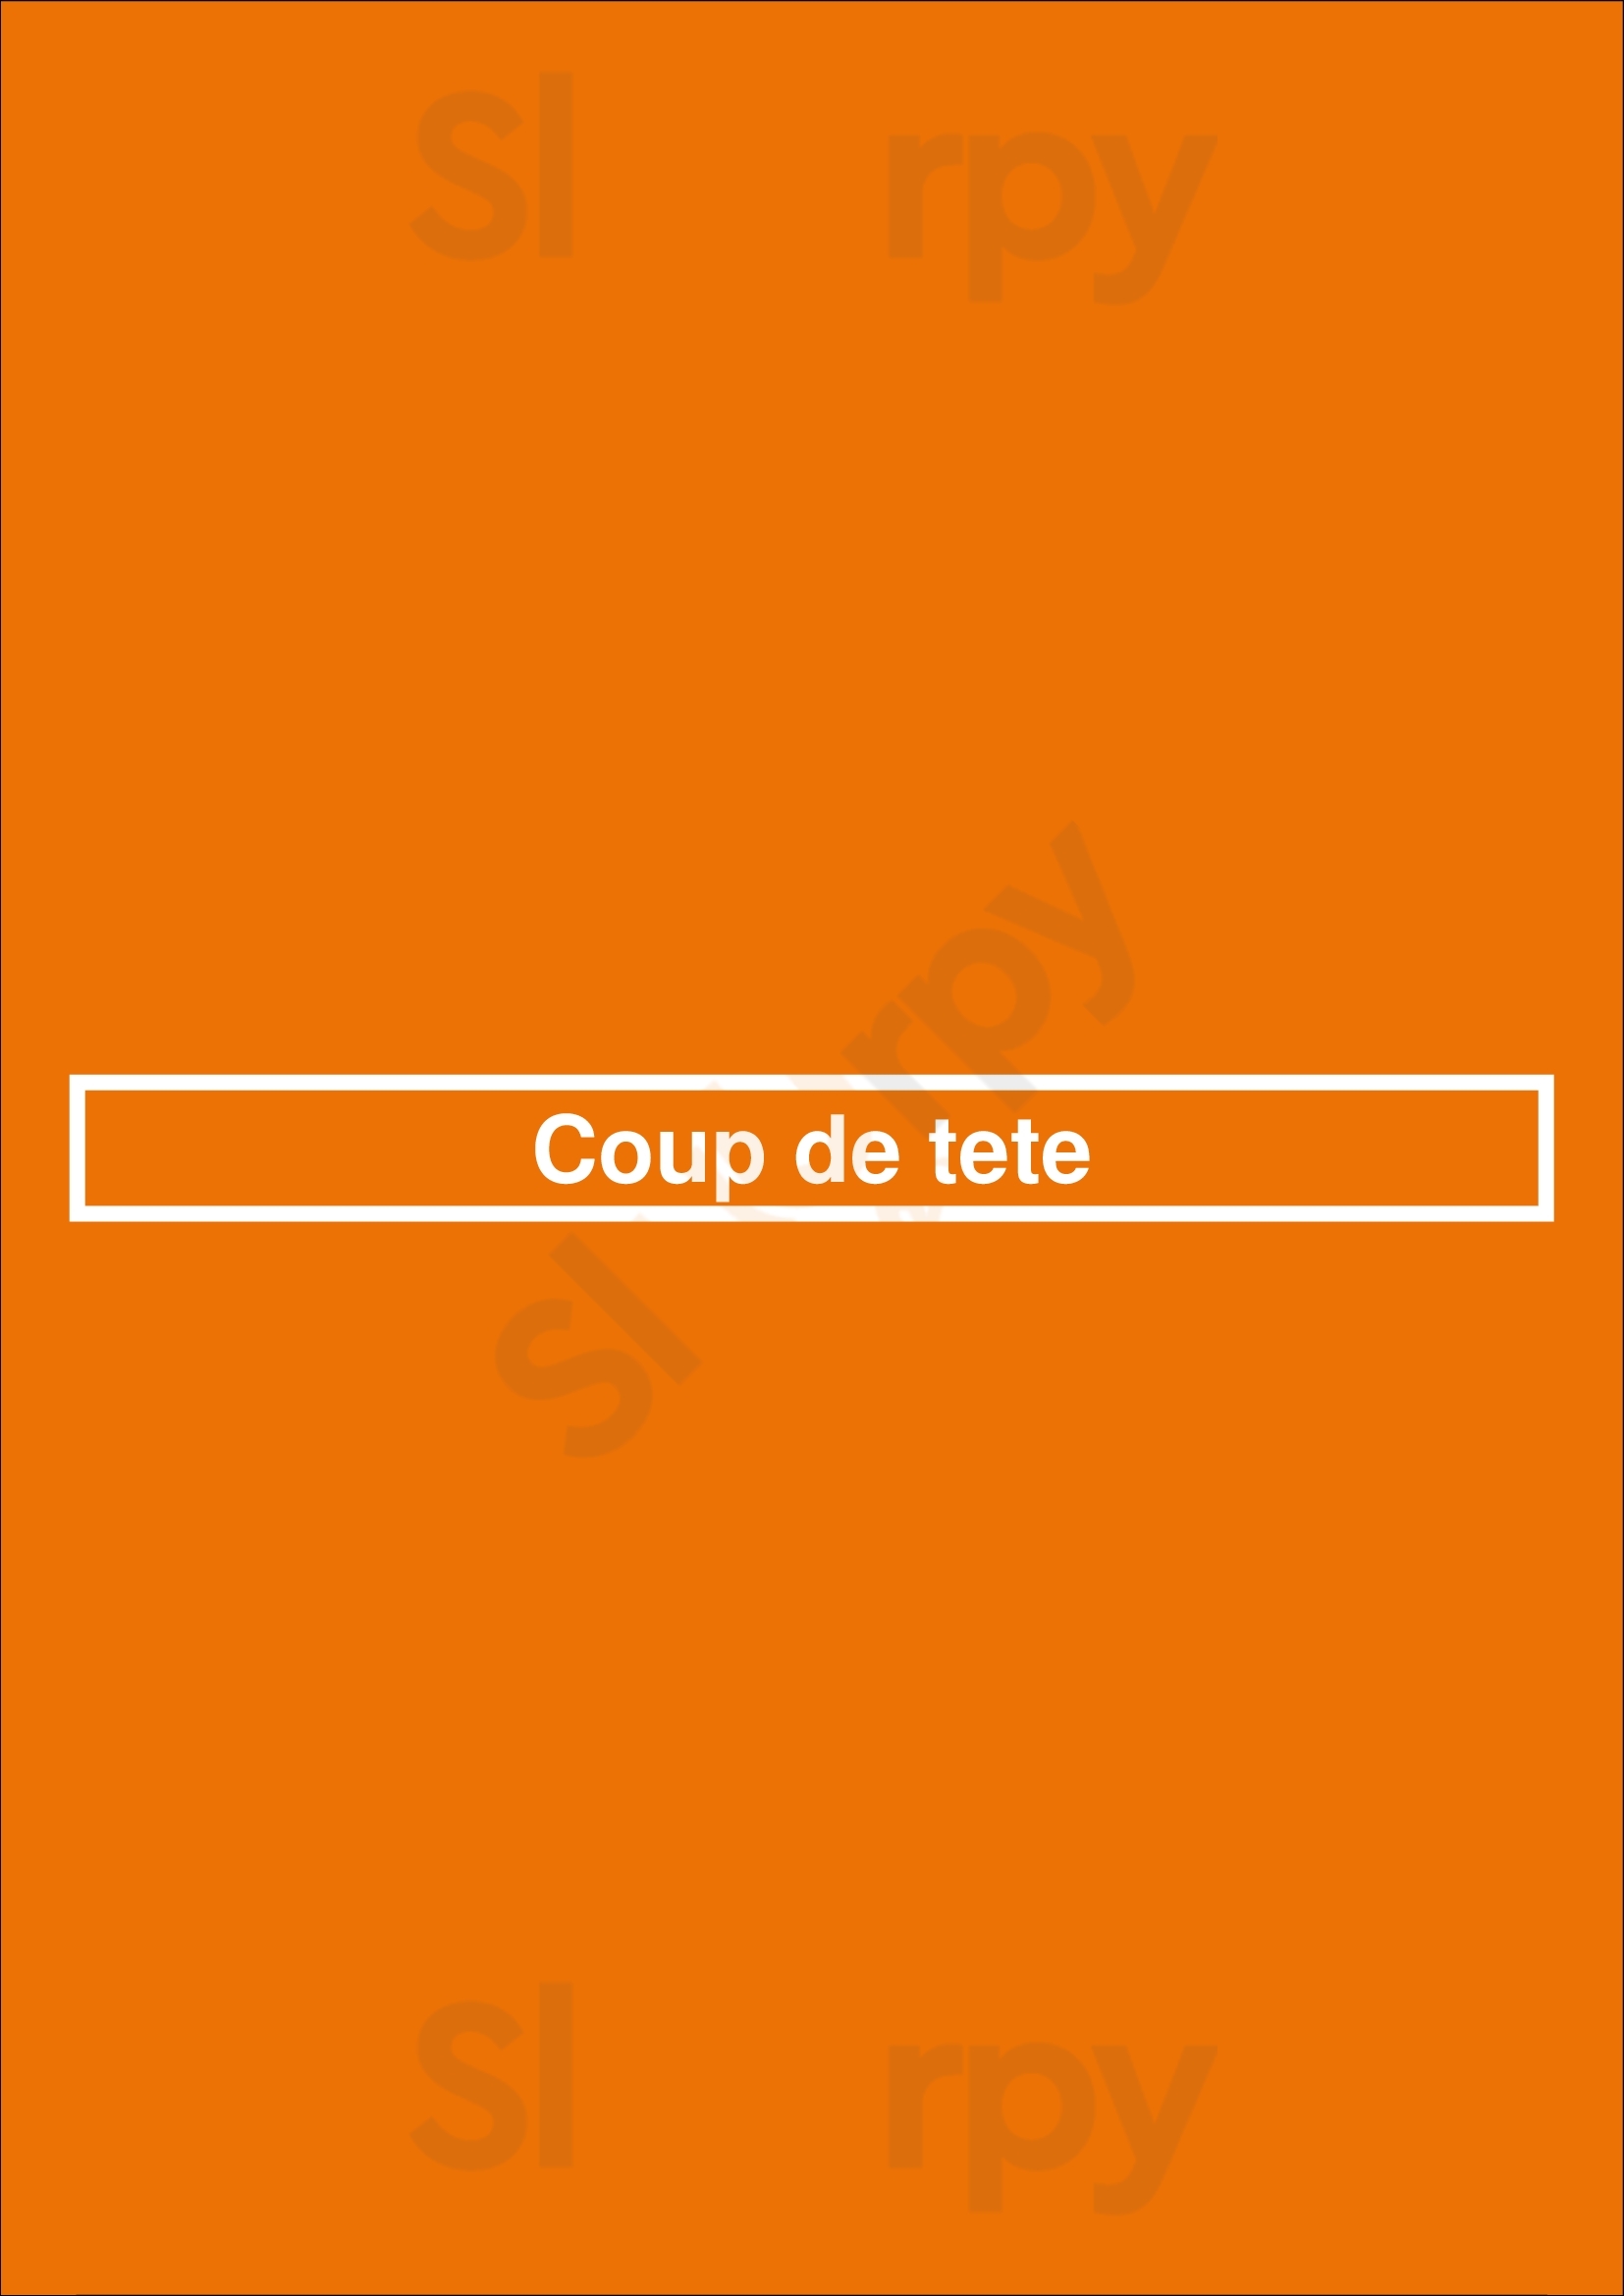 Coup De Tete Paris Menu - 1